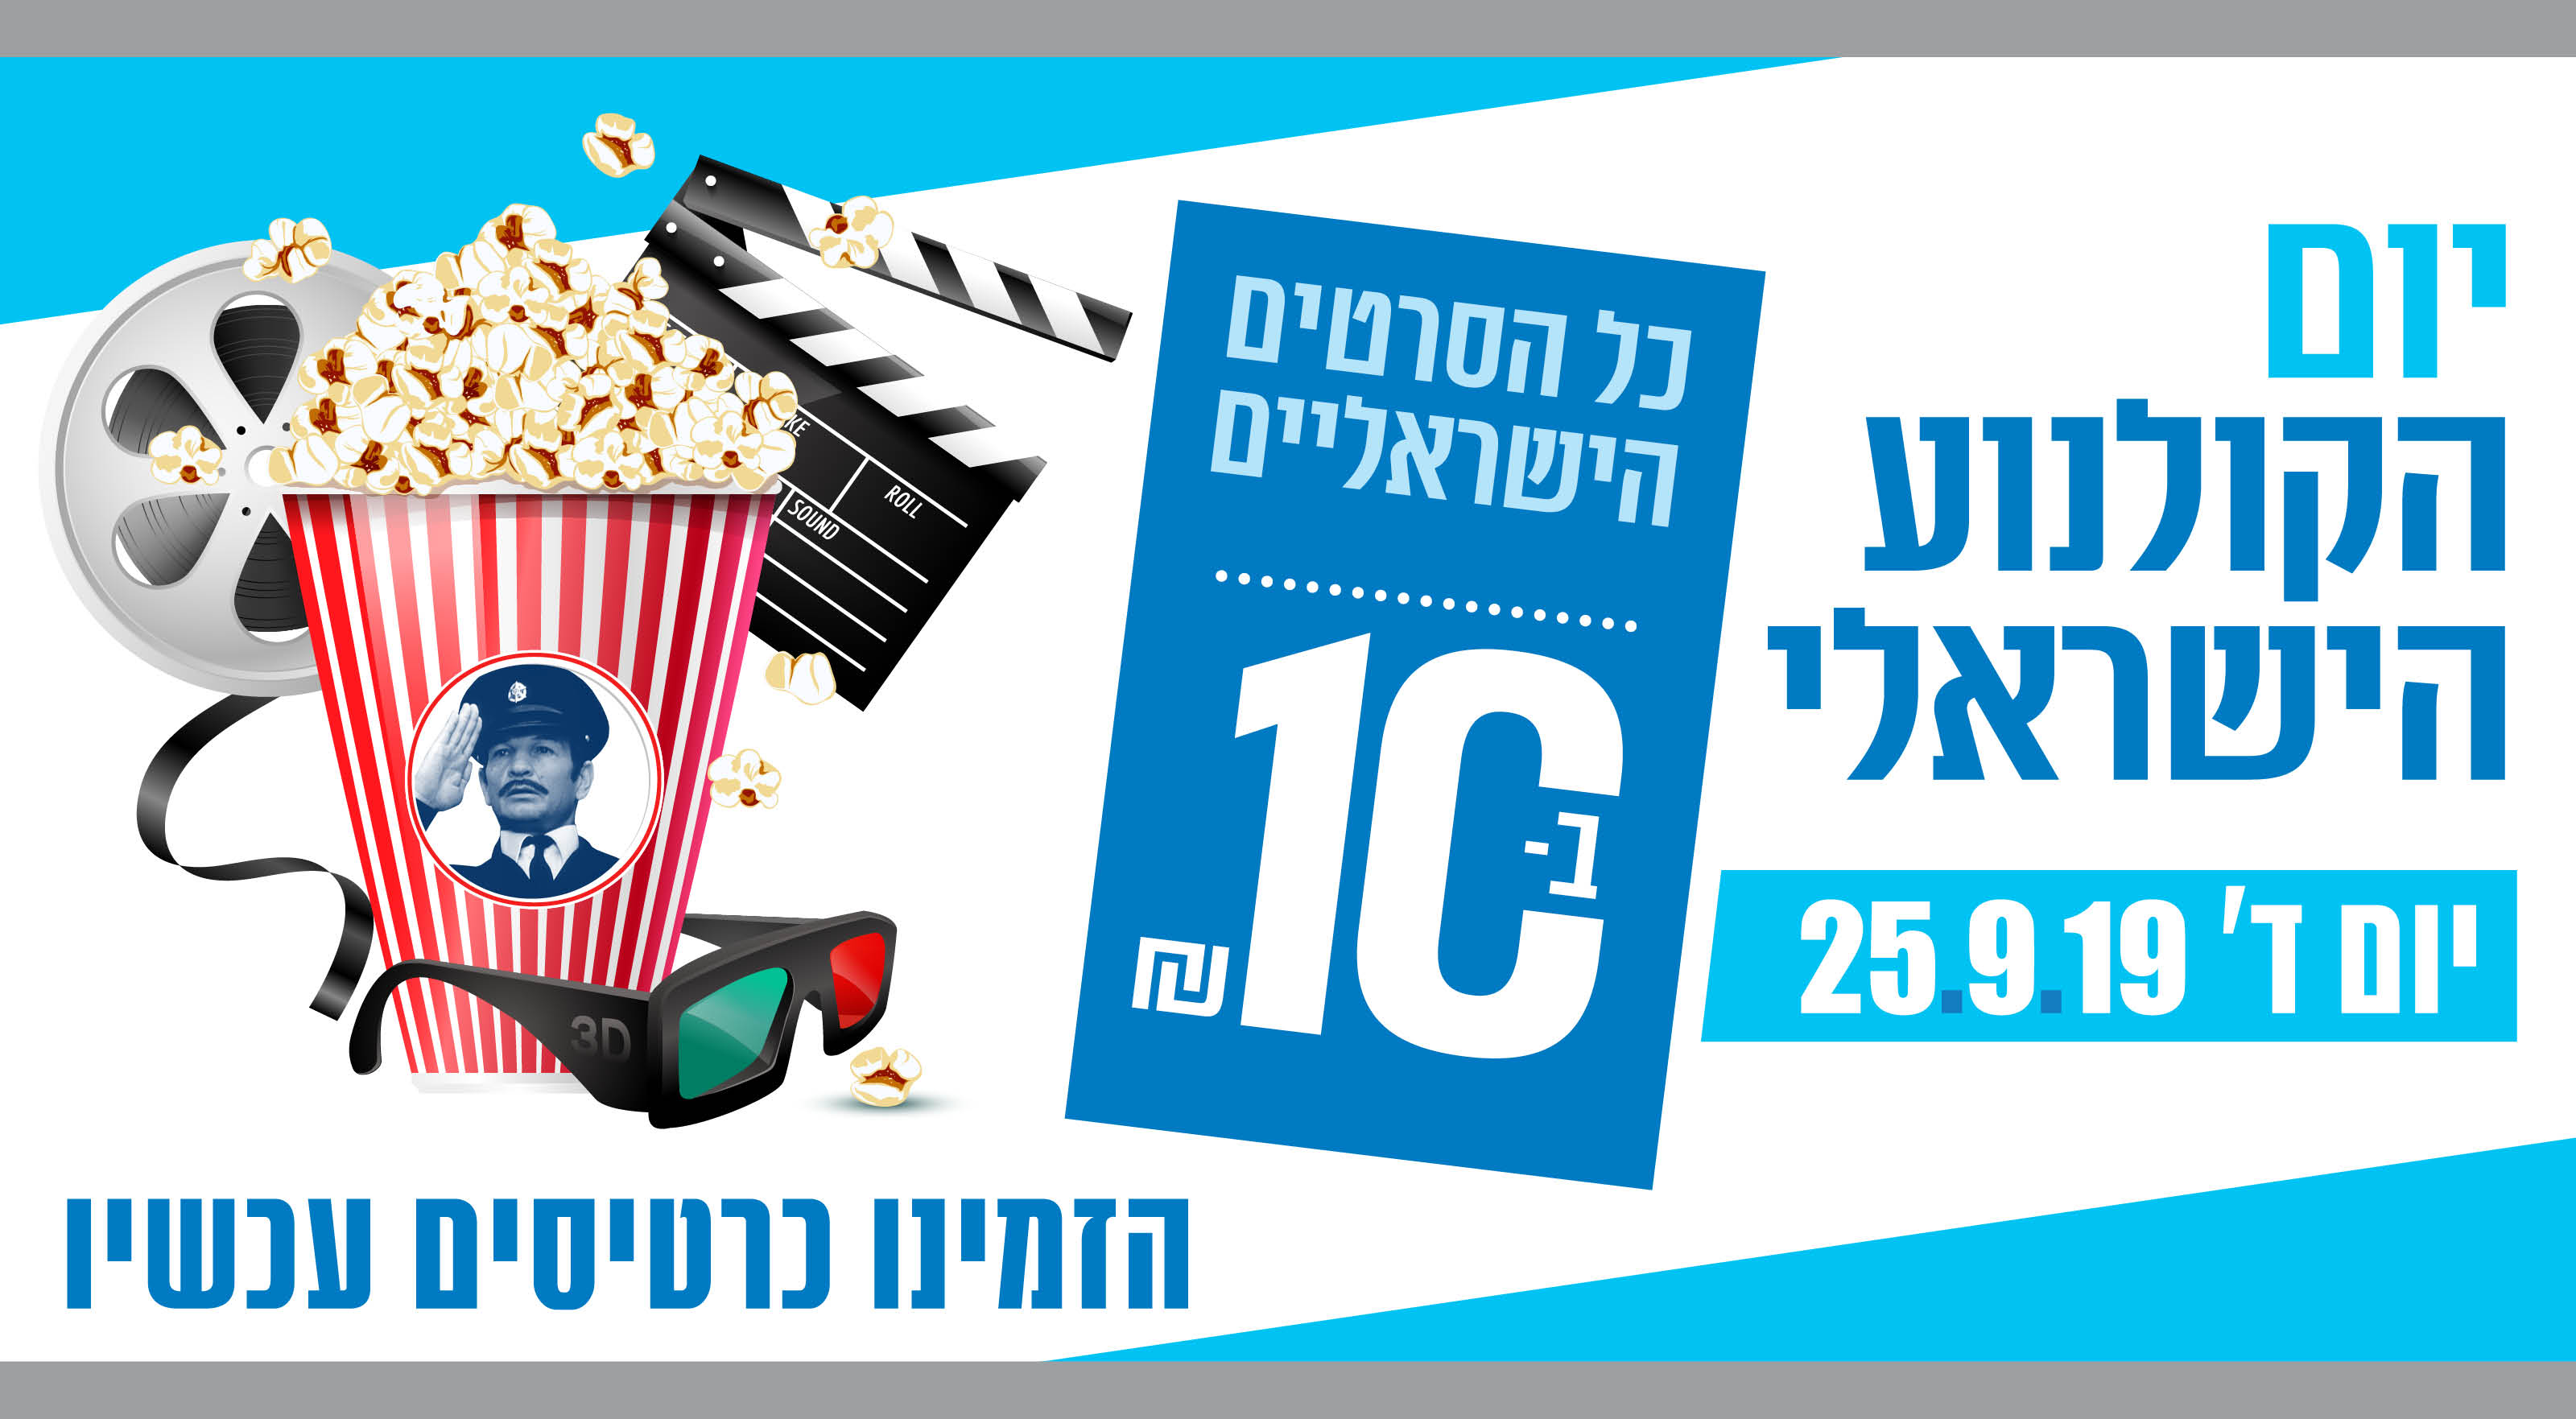 יום הקולנוע הישראלי כל הסרטים הישראליים ב- 10 שח 25.9.19